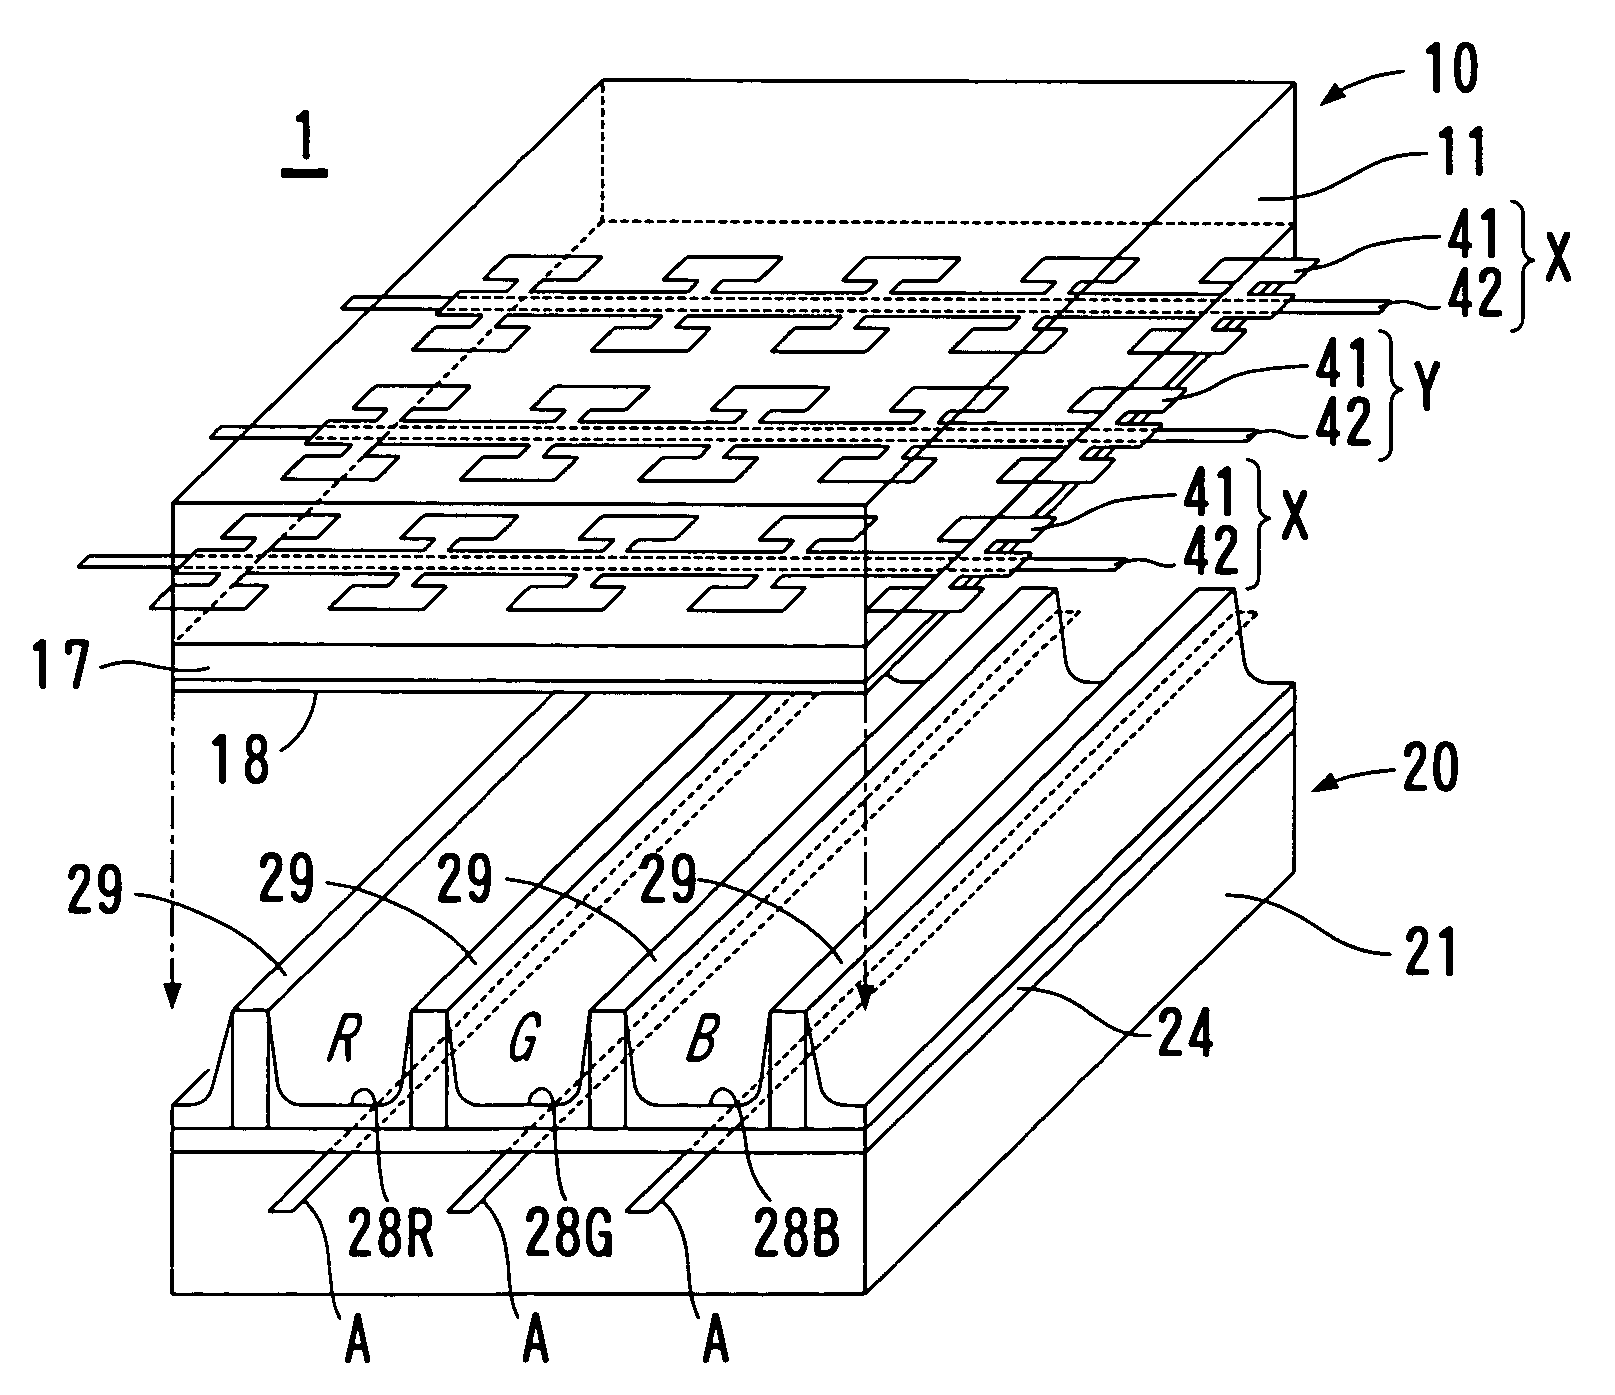 Method of manufacturing flat panel displays